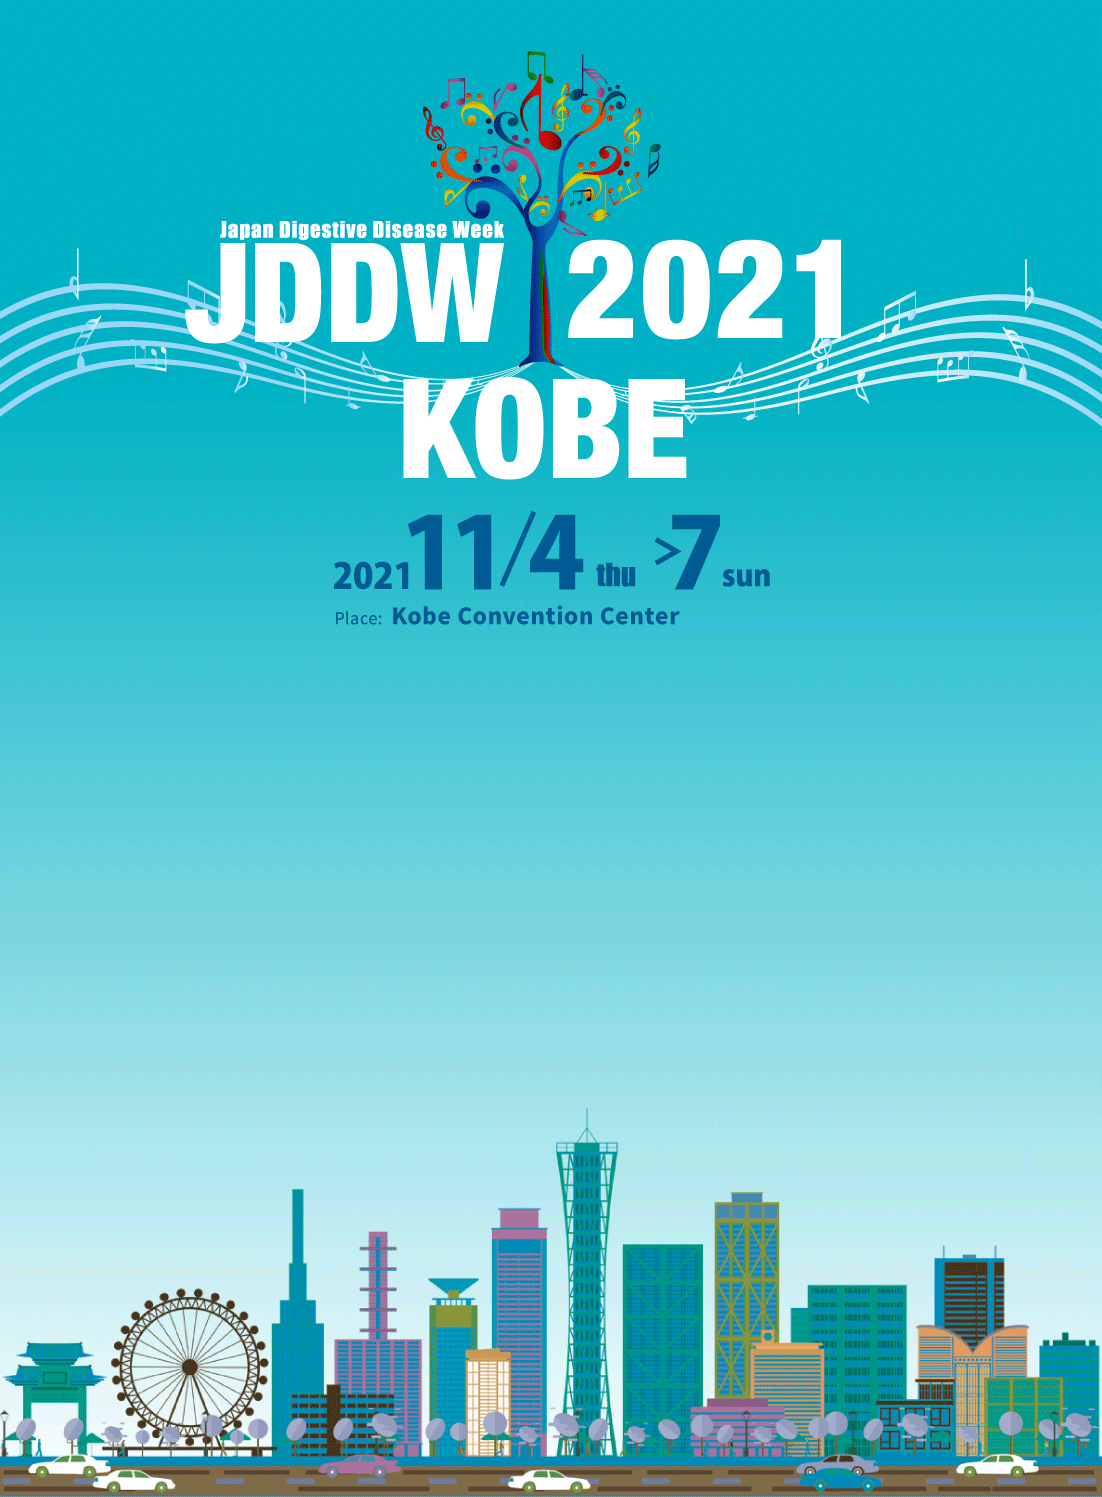 jddw2021